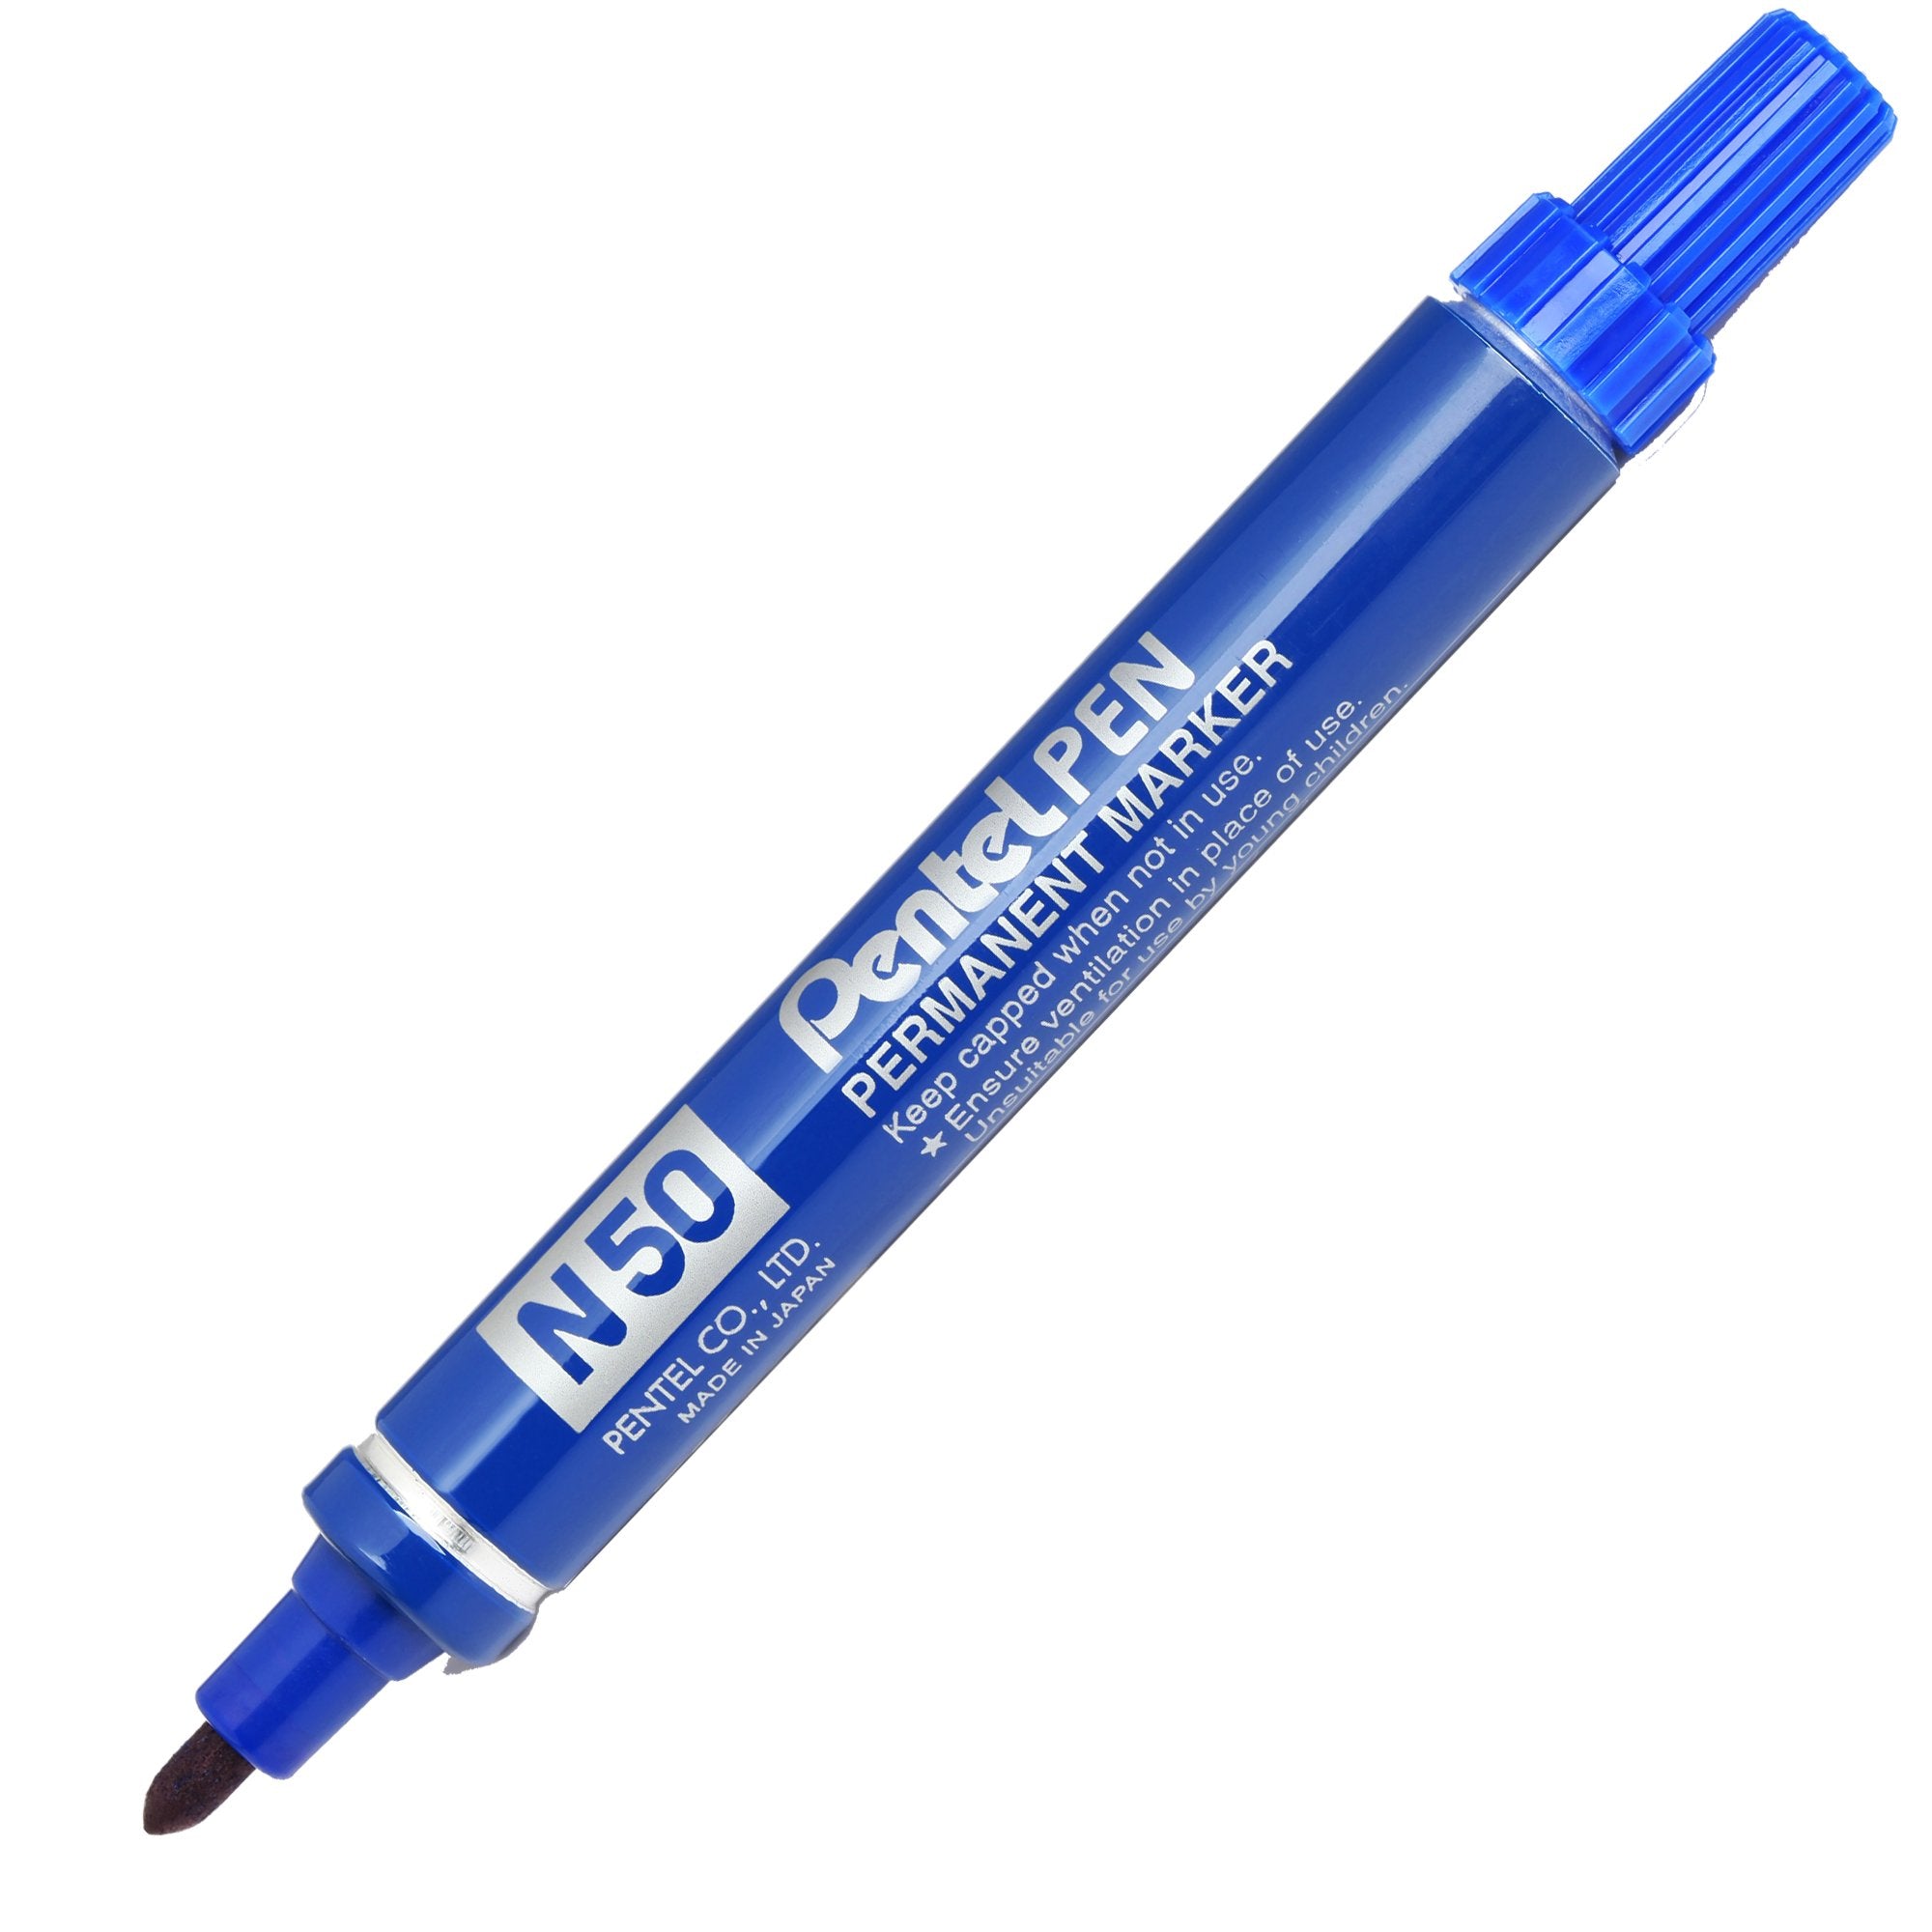 pentel-marcatore-pen-n50-blu-p-tonda